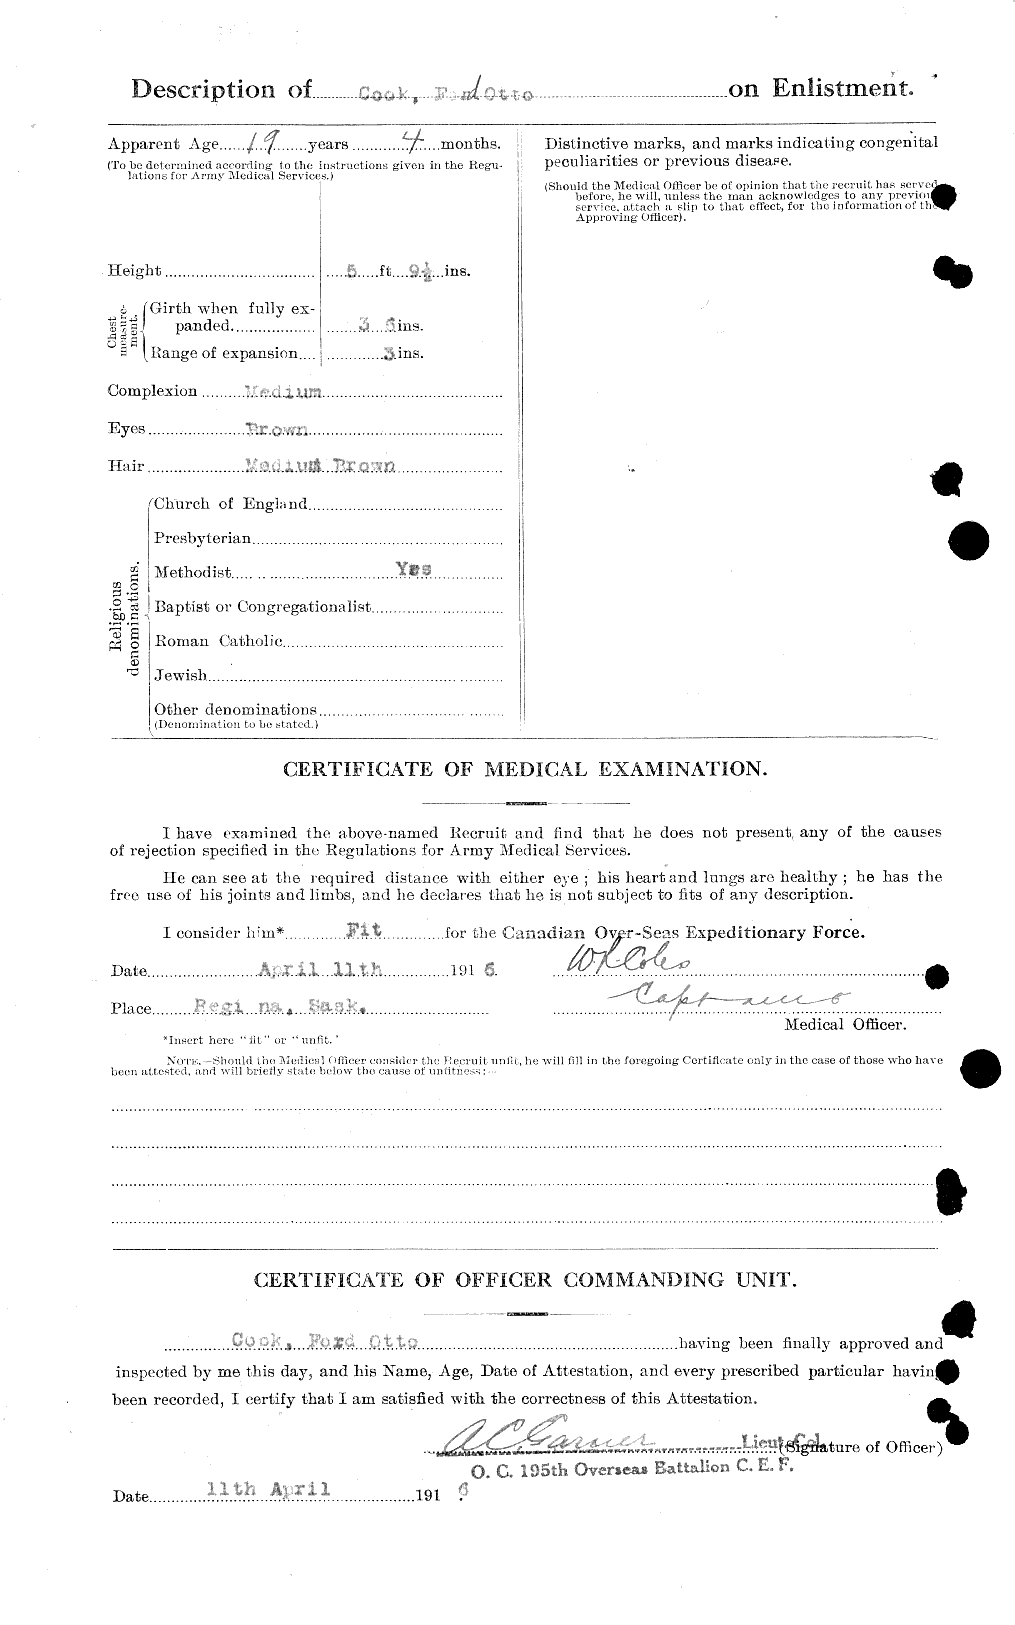 Dossiers du Personnel de la Première Guerre mondiale - CEC 038785b